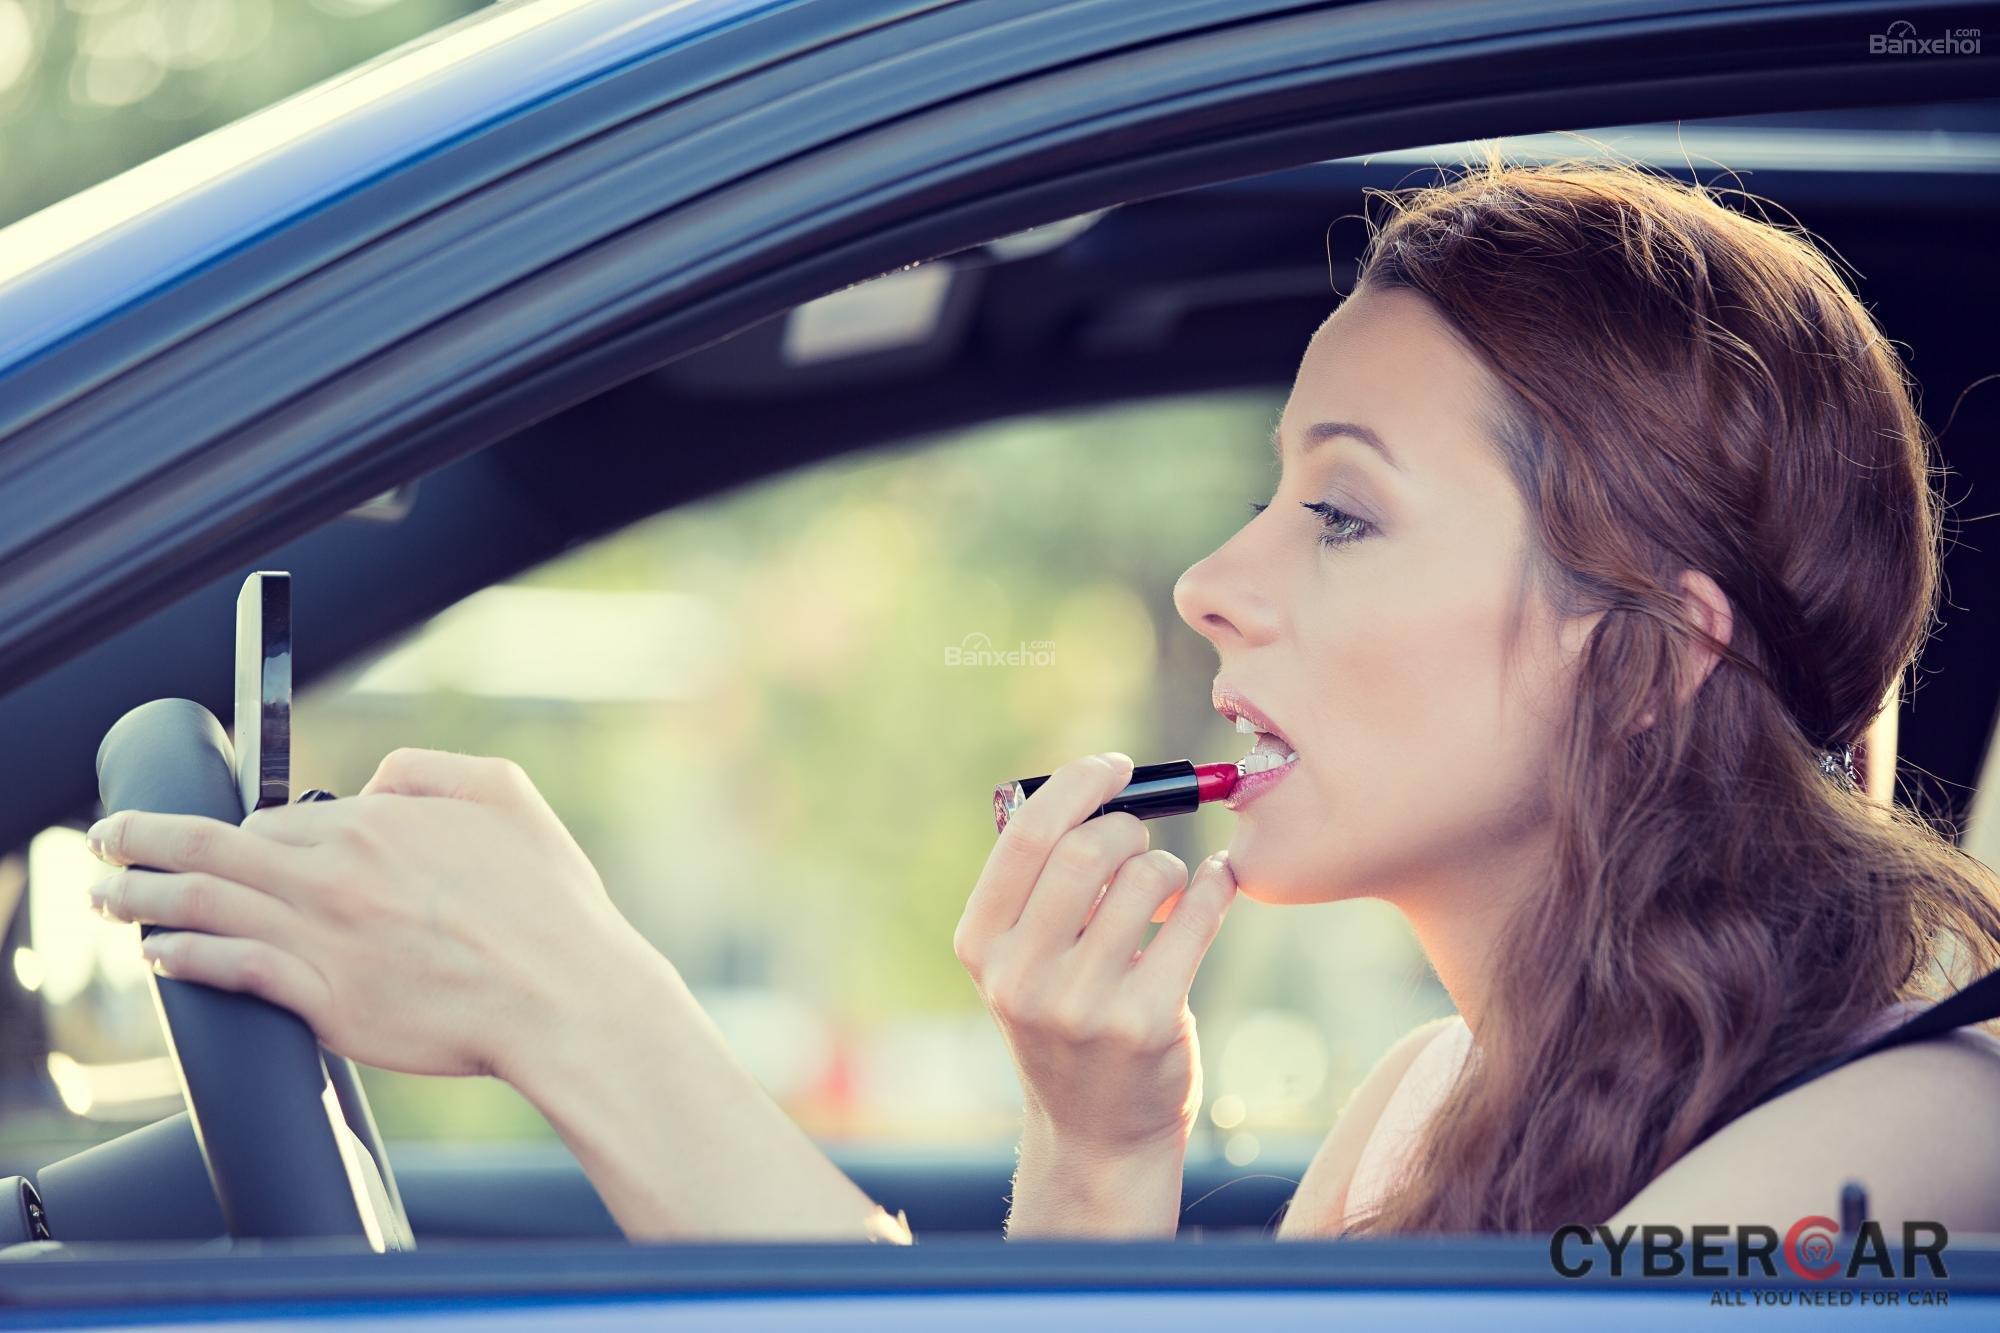 7 thói quen gây xao nhãng khi lái xe ô tô: Trang điểm z